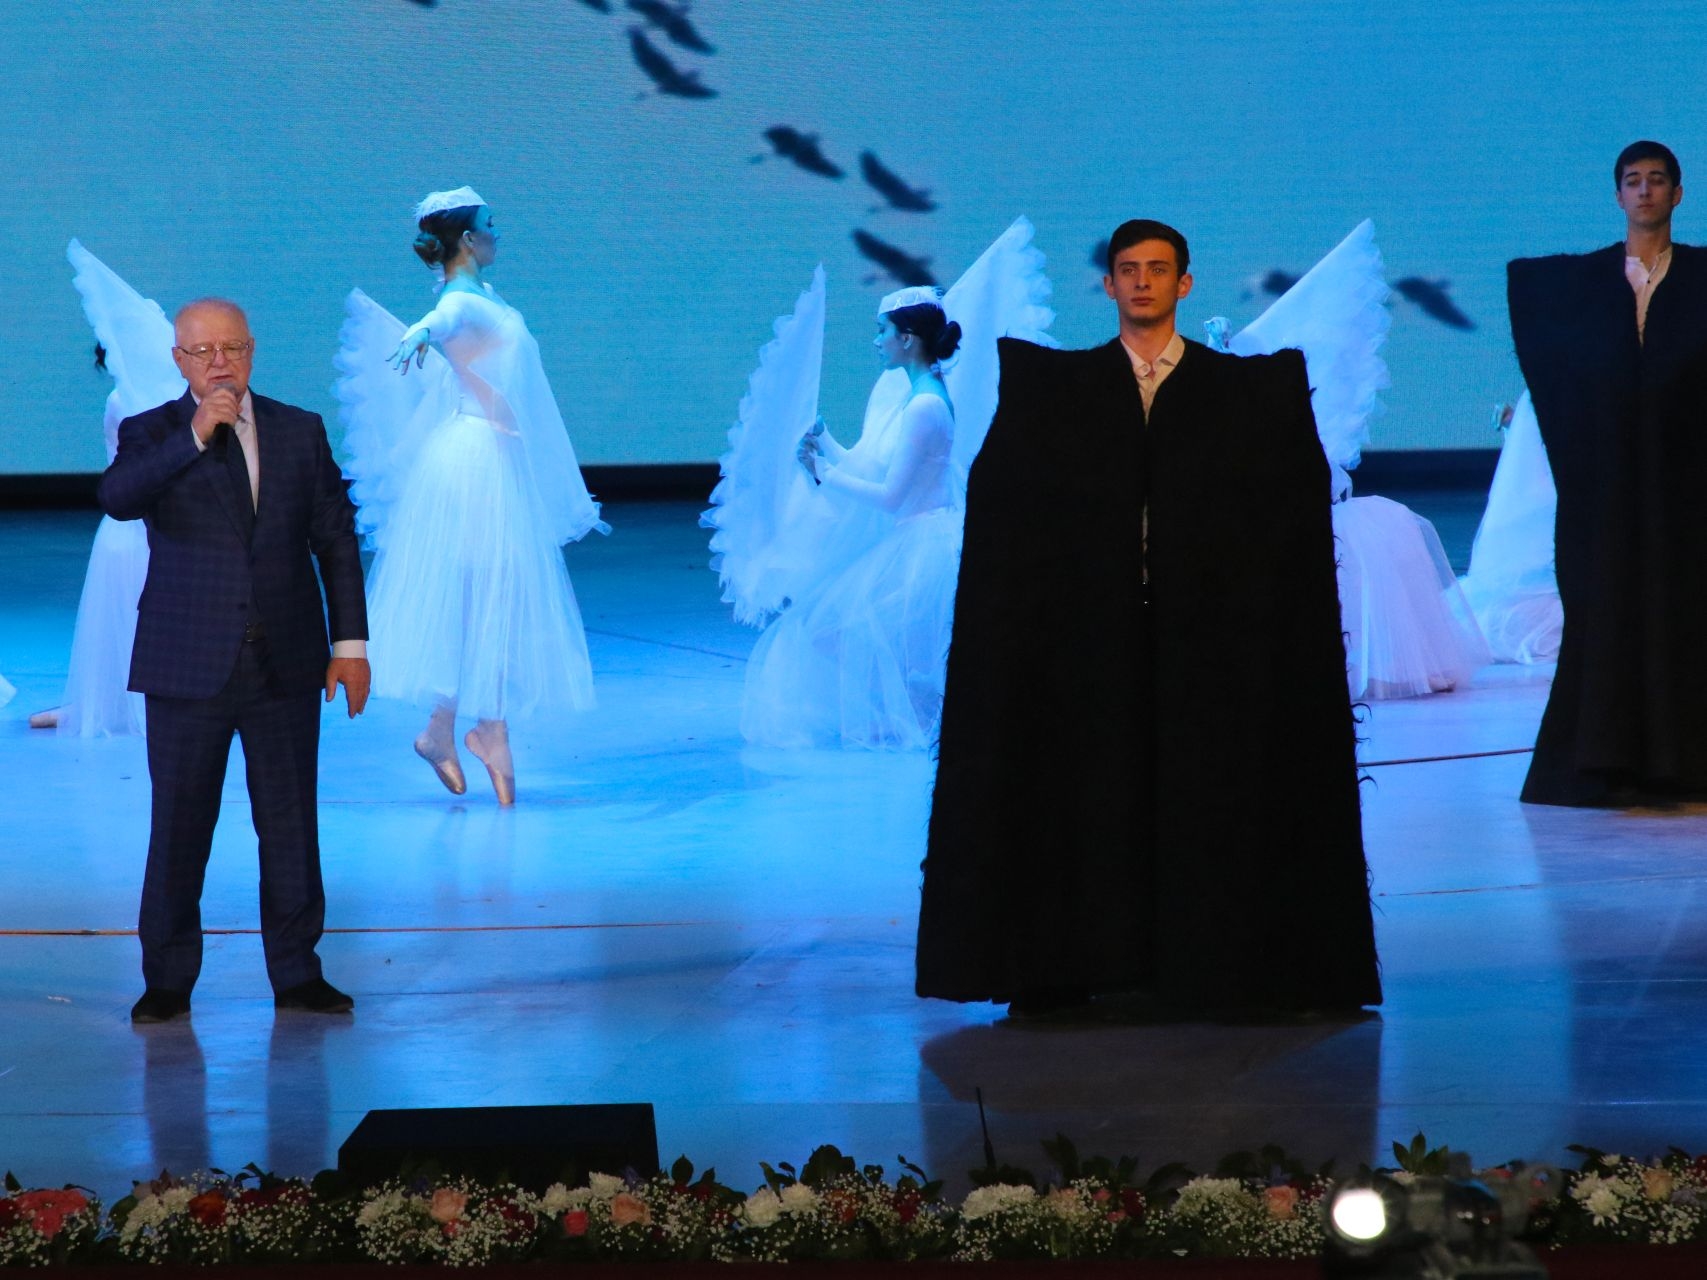 Фото предоставлено пресс-службой главы республики Дагестан